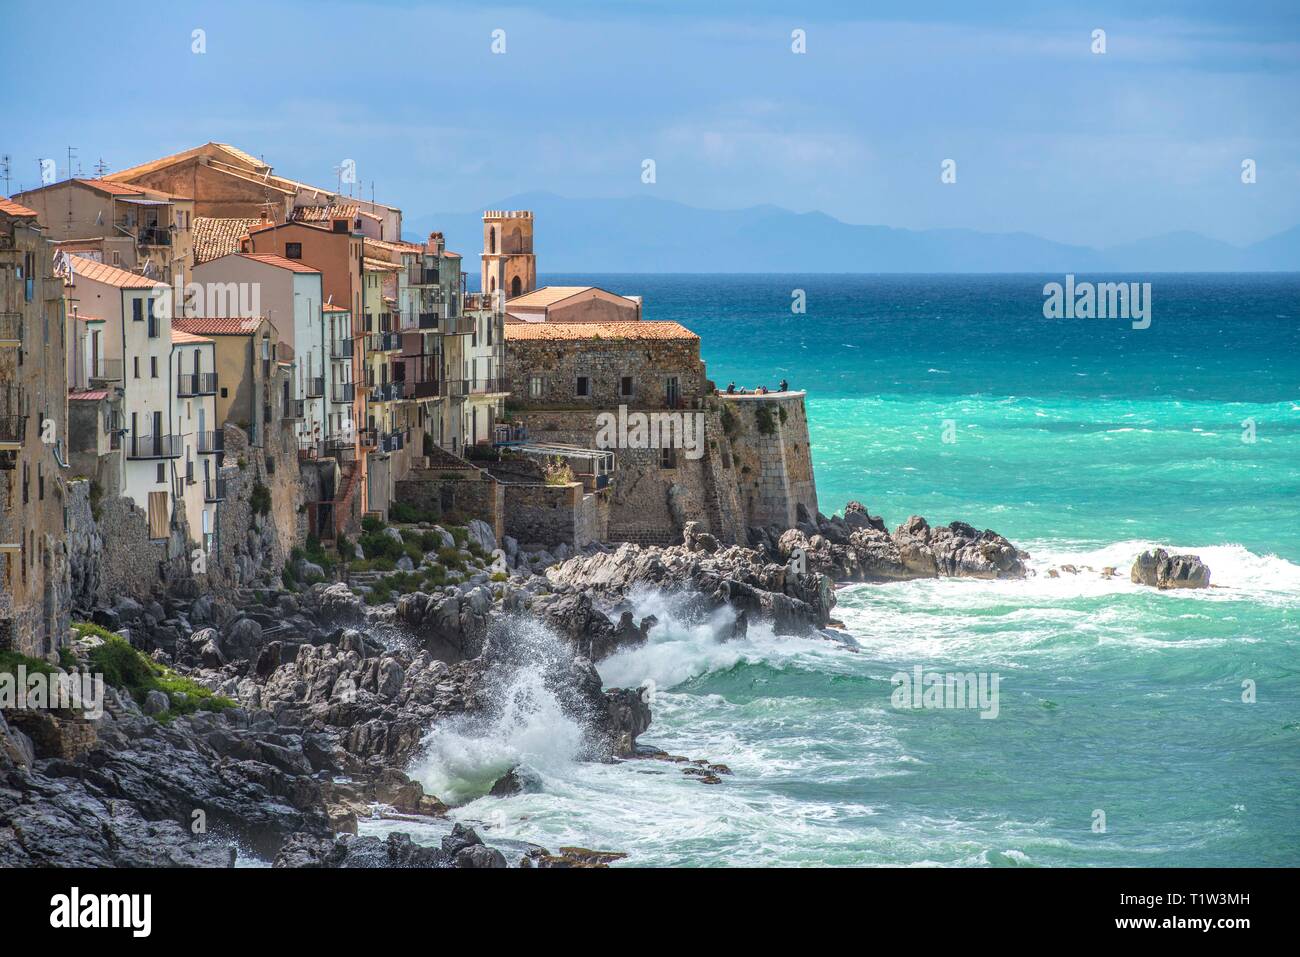 L'Italia, sicilia, di onde che si infrangono contro la costa della pittoresca città di Cefalù. La Chiesa dell'Itria domina il punto nord Foto Stock